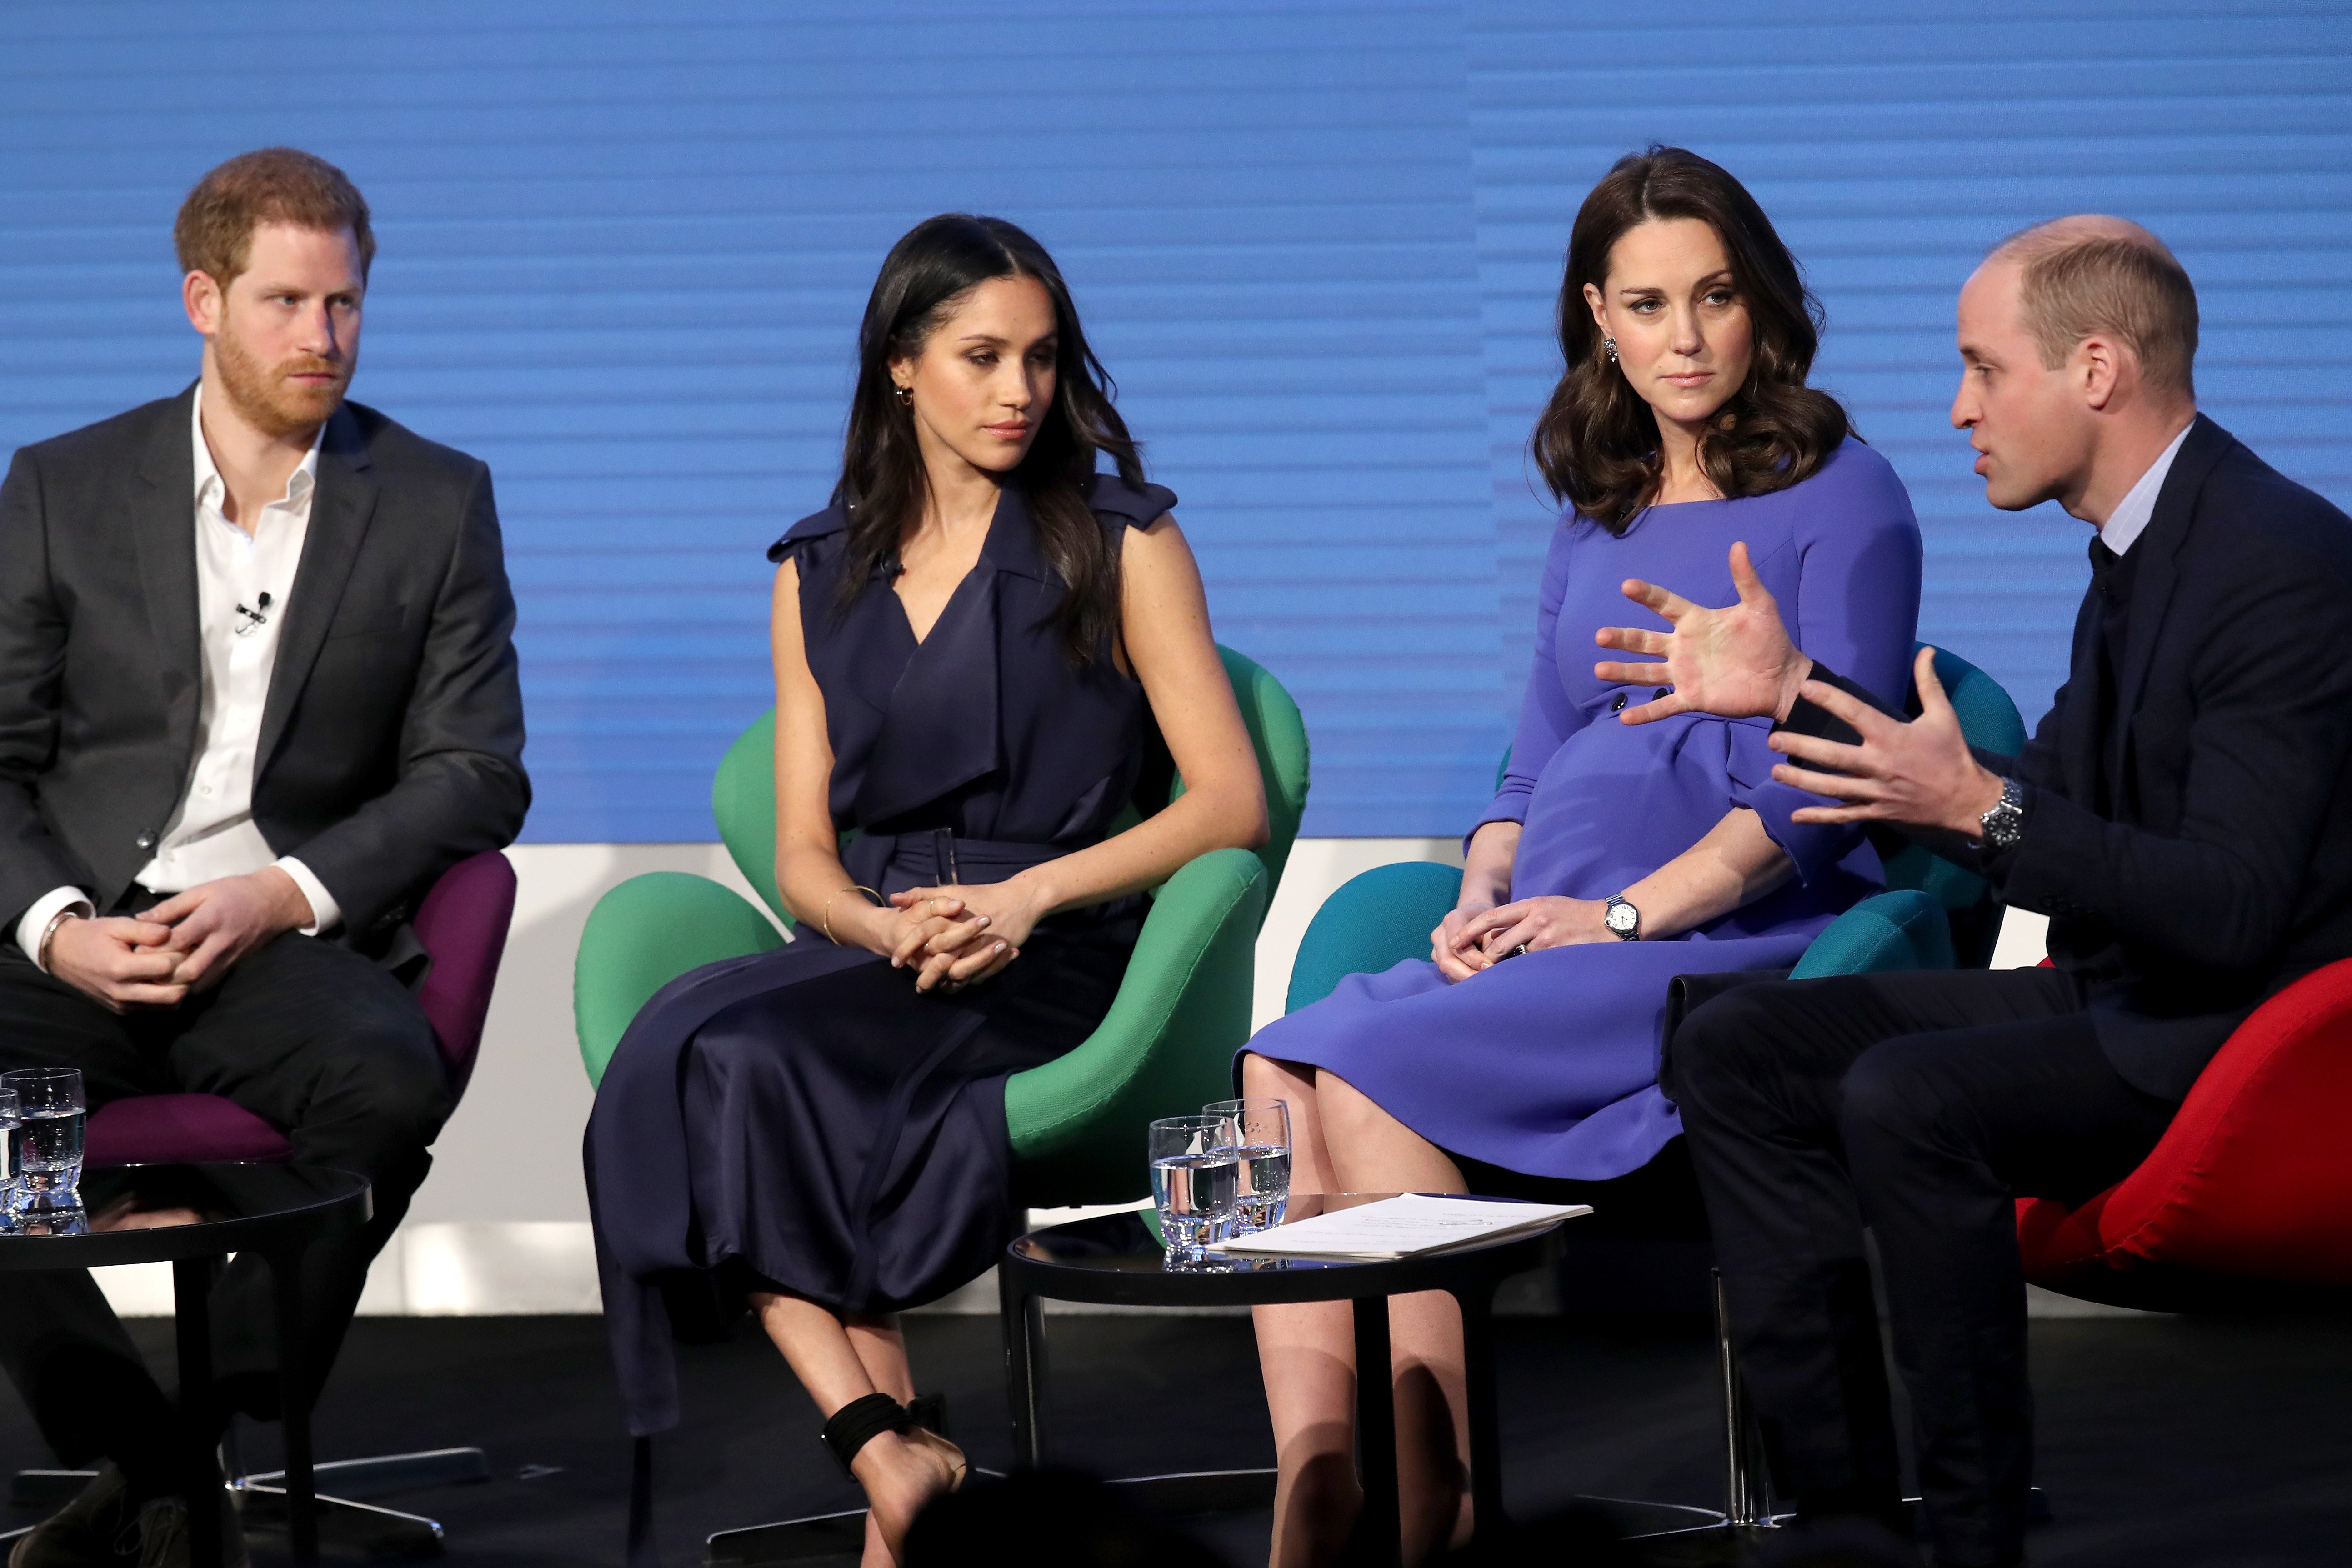 El príncipe Harry, Meghan Markle, Kate Middleton y el príncipe William en el primer Foro anual de la Fundación Real, el 28 de febrero de 2018 en Londres. | Foto: Getty Images